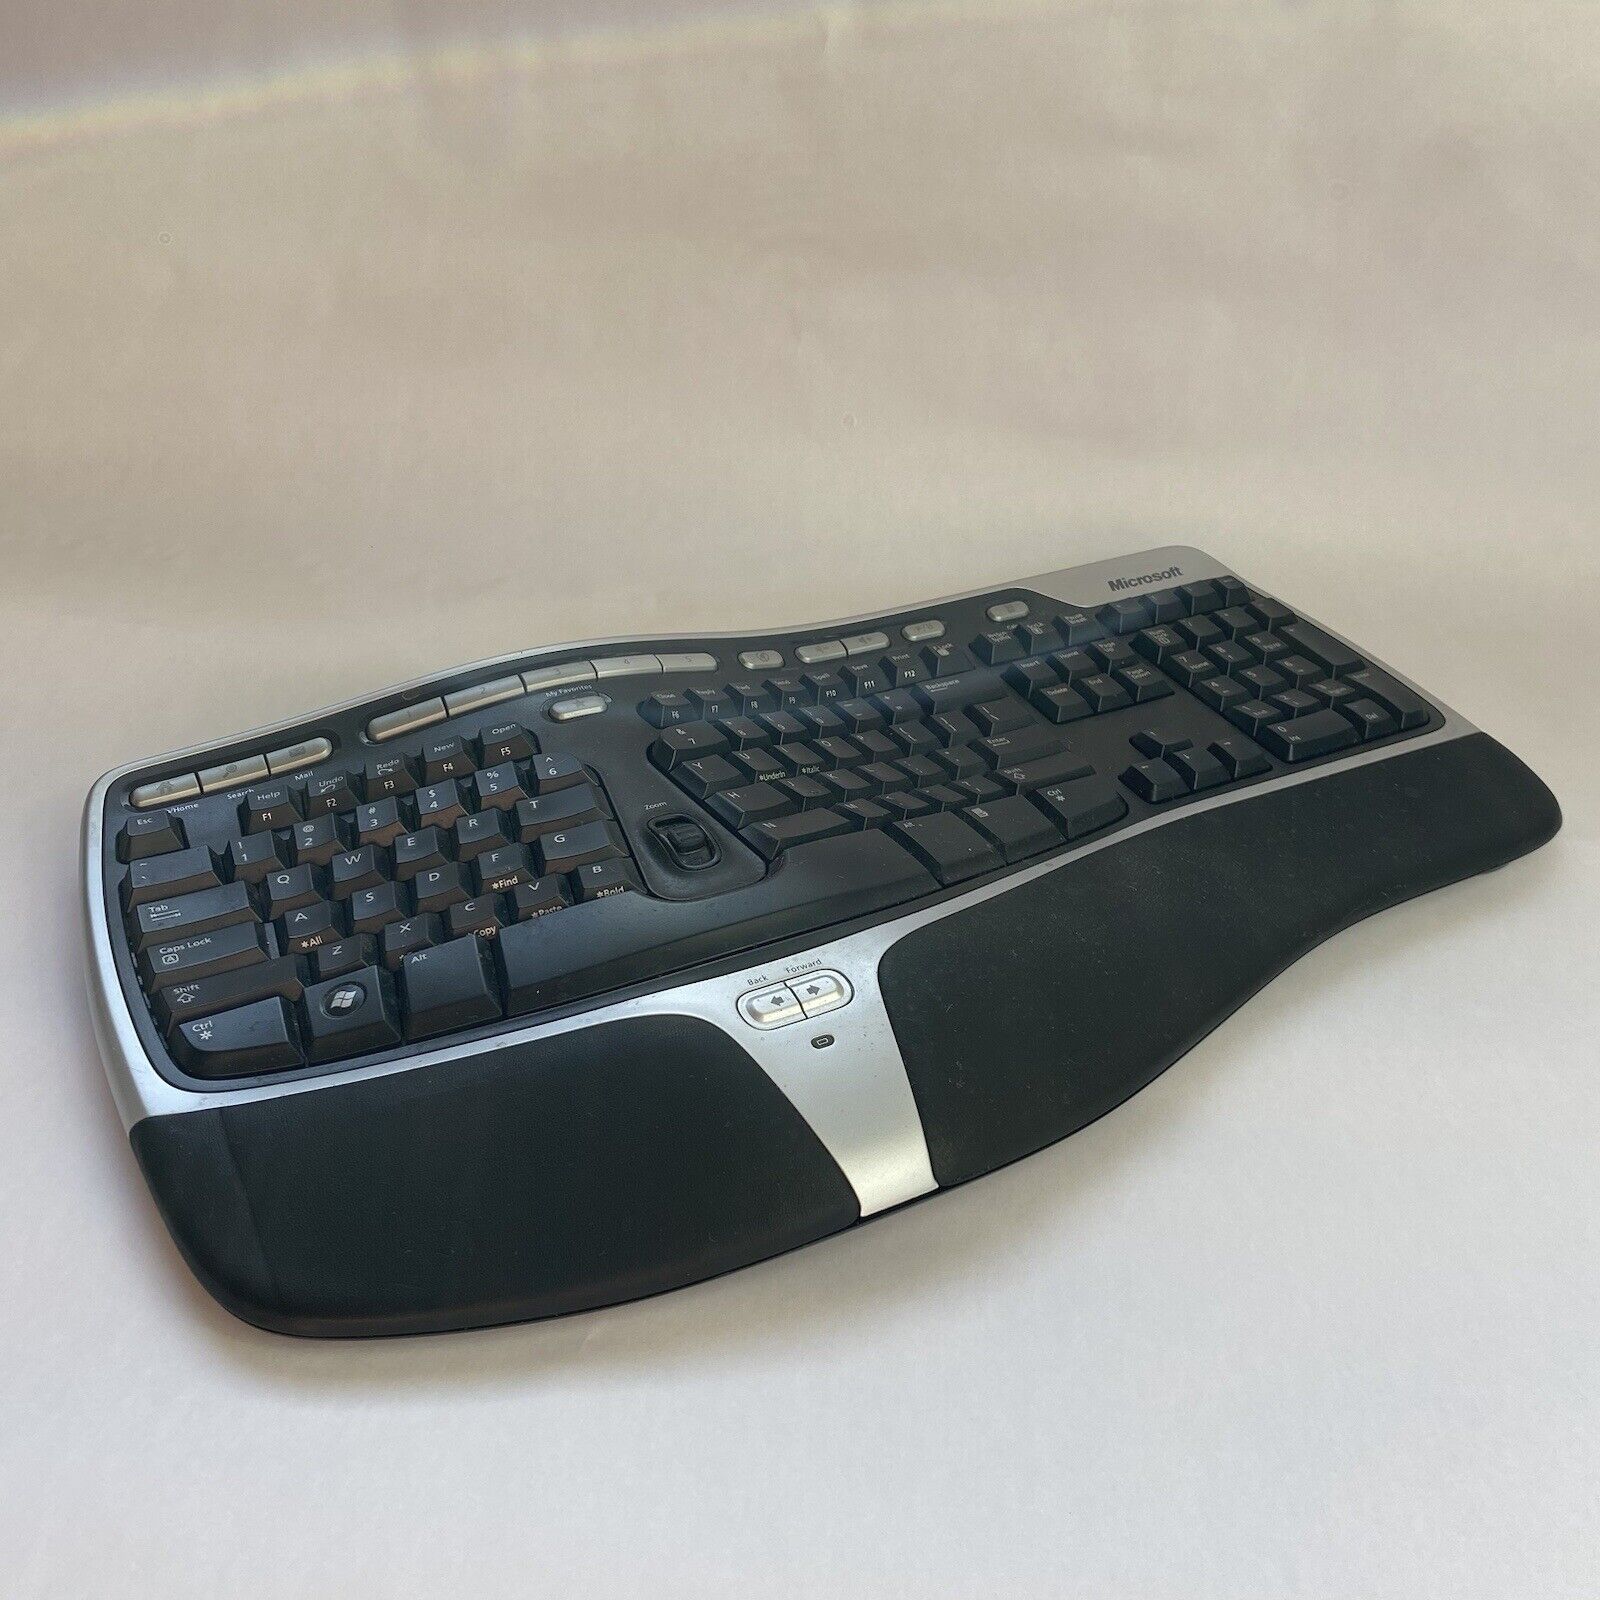 Microsoft Natural Wireless Ergonomic Keyboard 7000 No USB Dongle